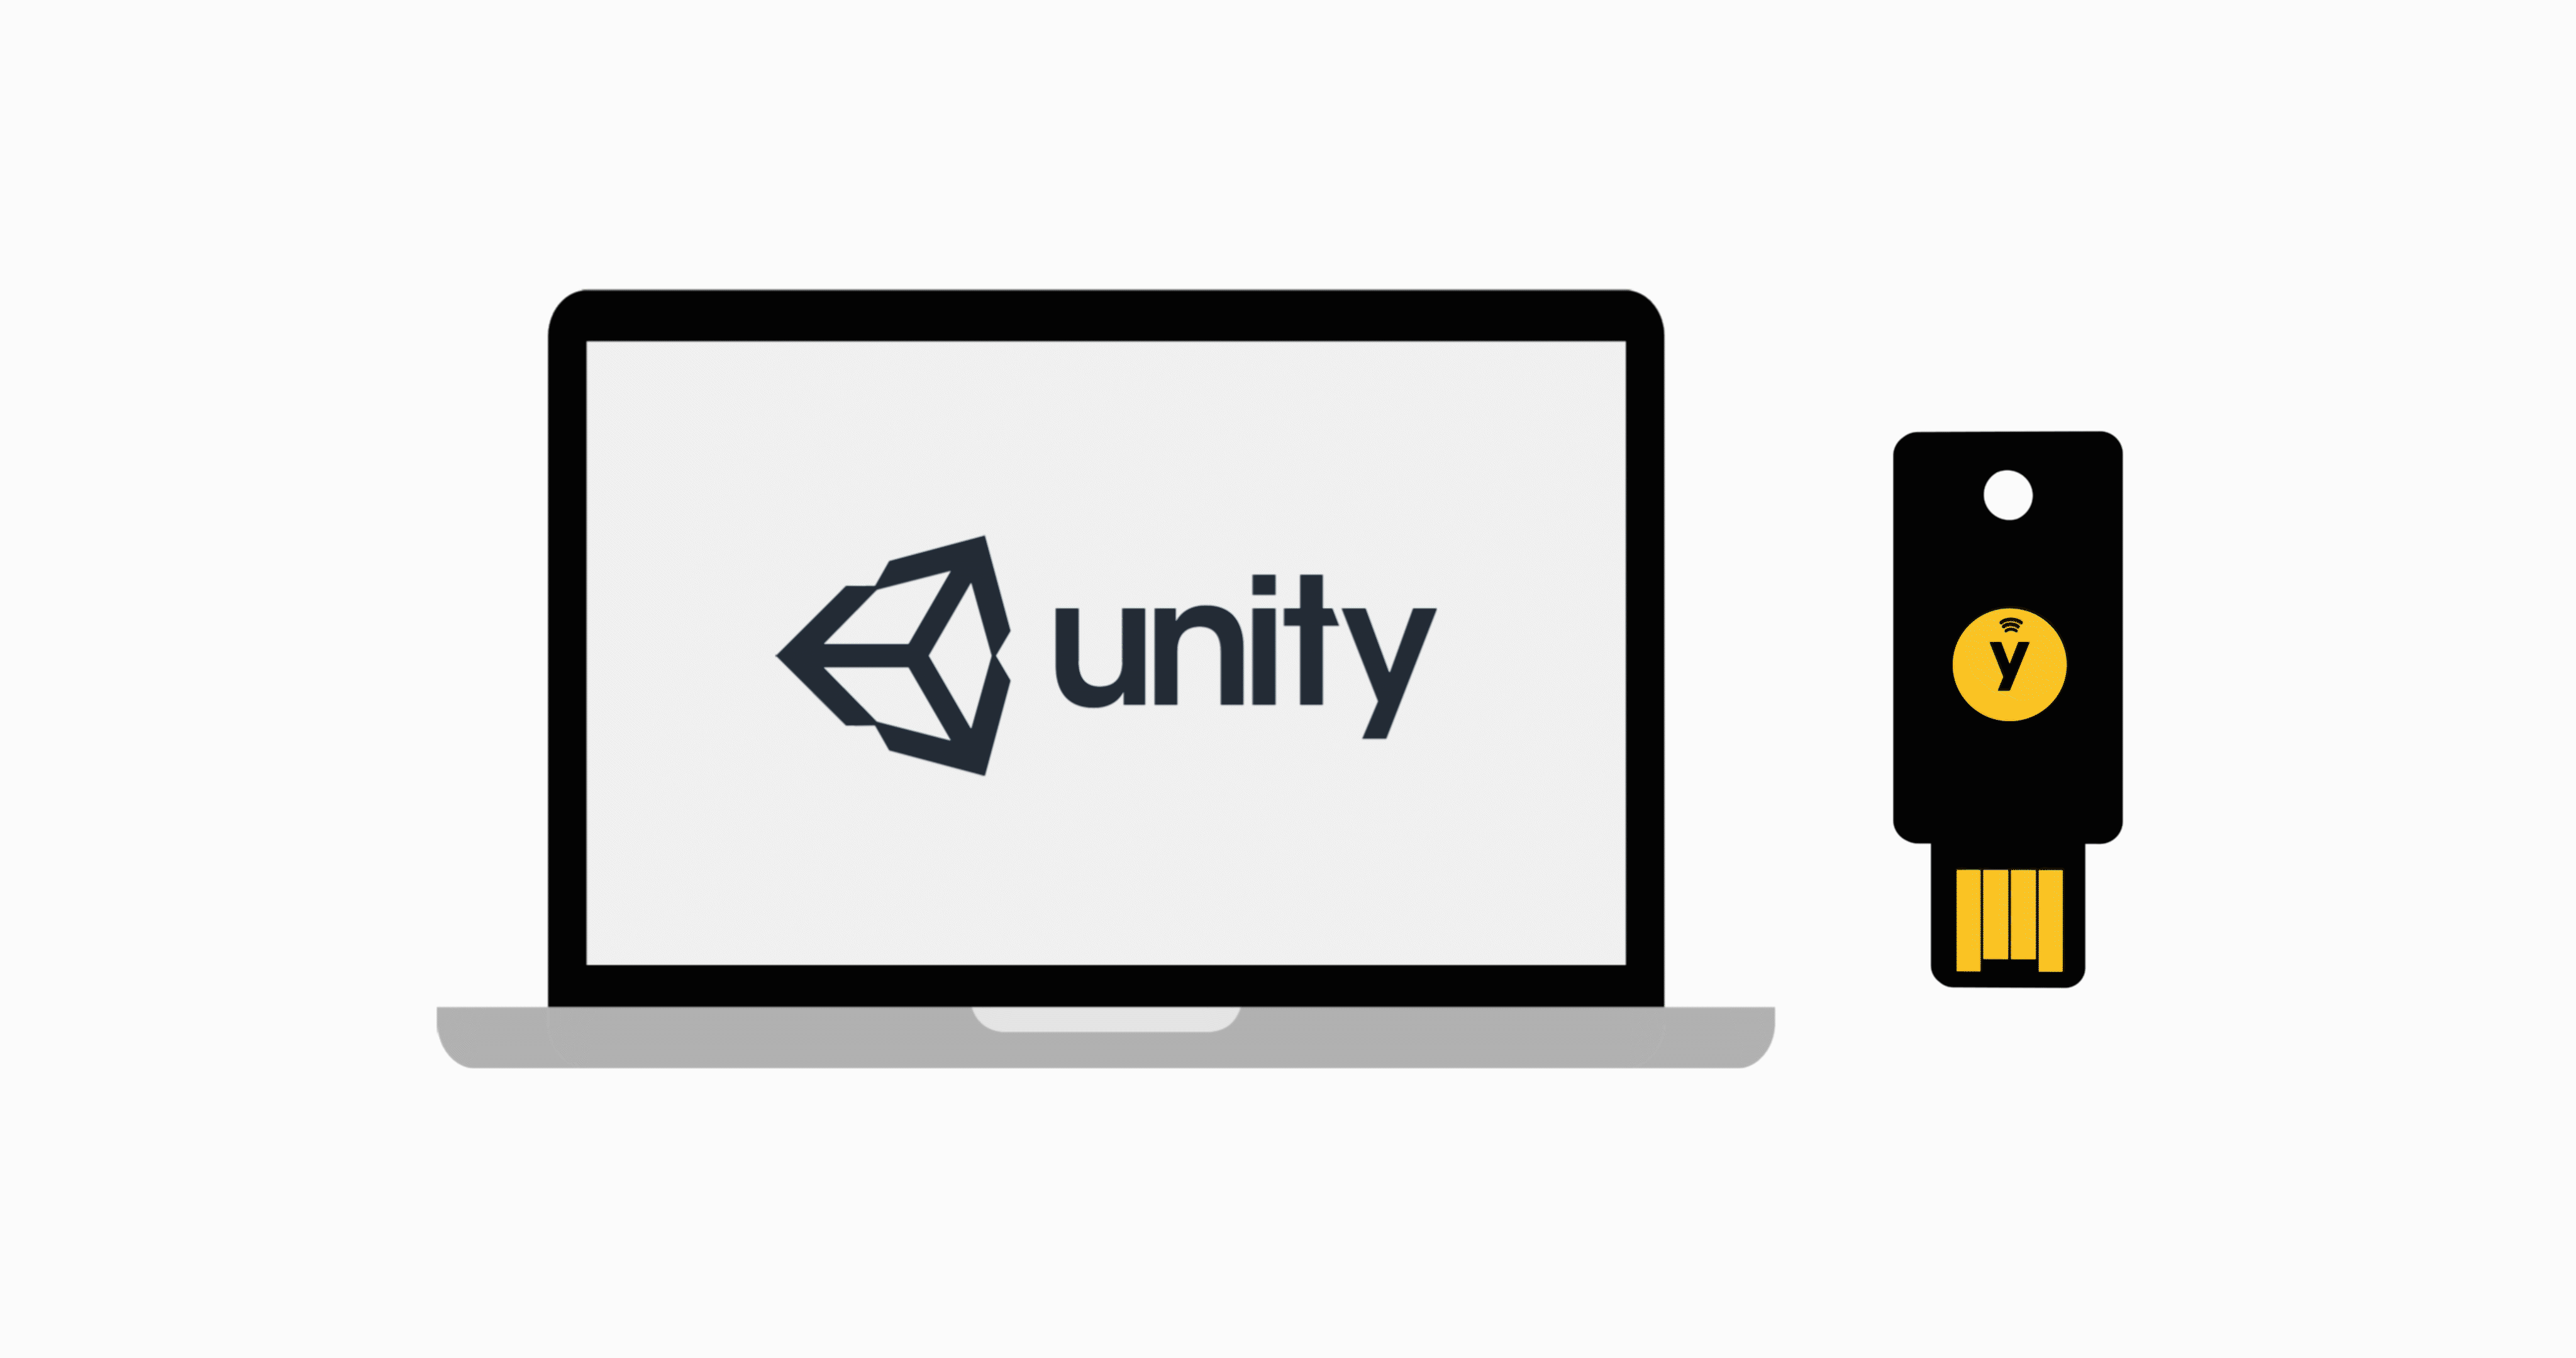 Unity main image